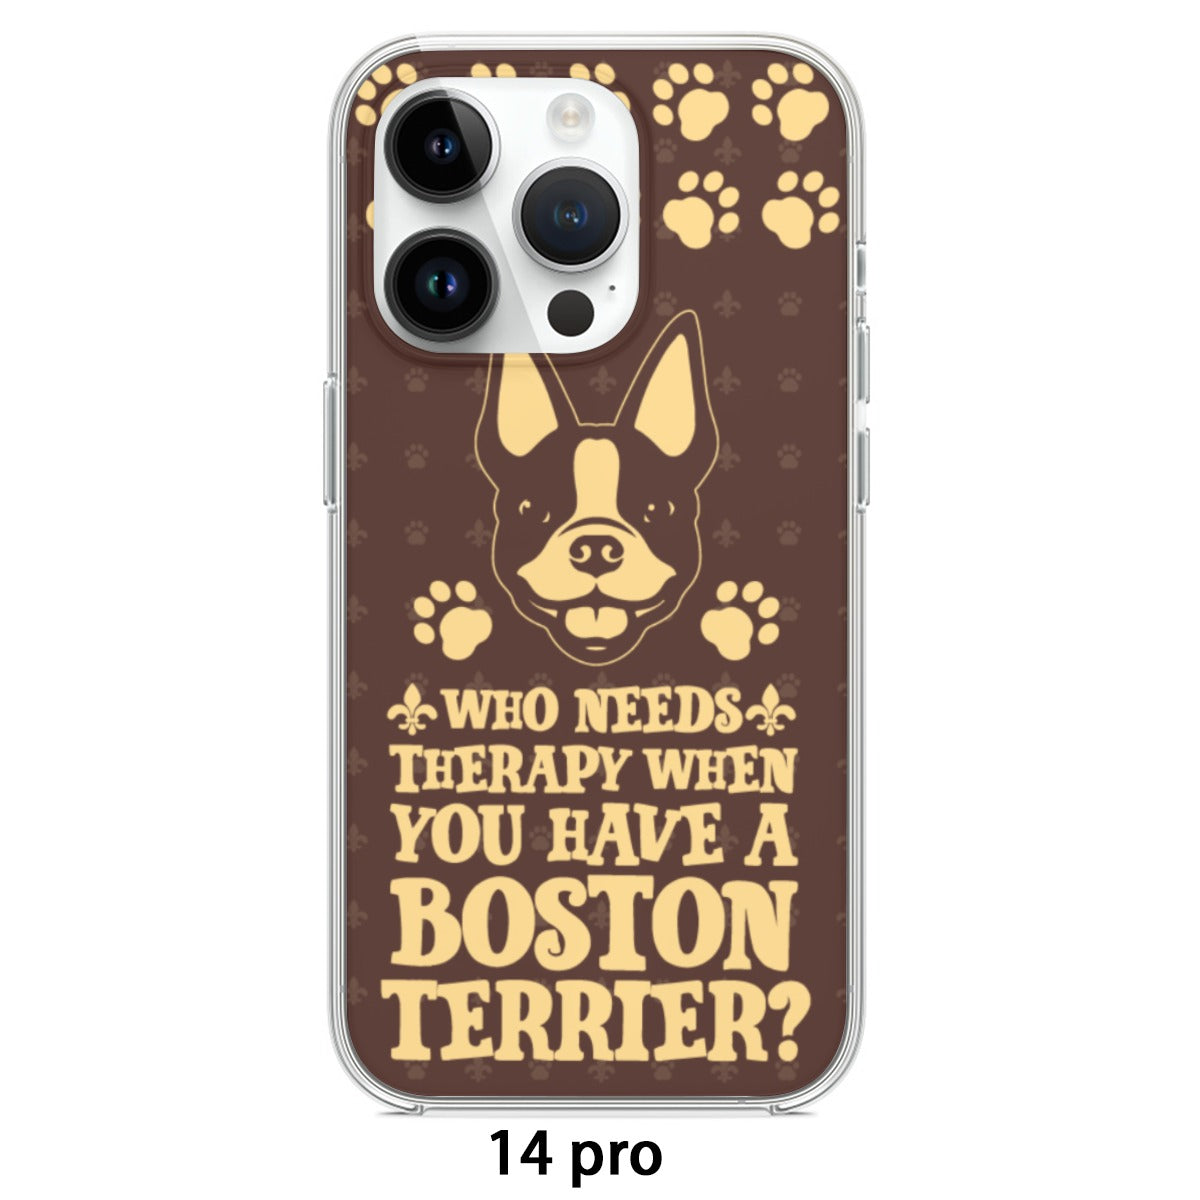 Gigi - iPhone case for Boston Terrier lovers